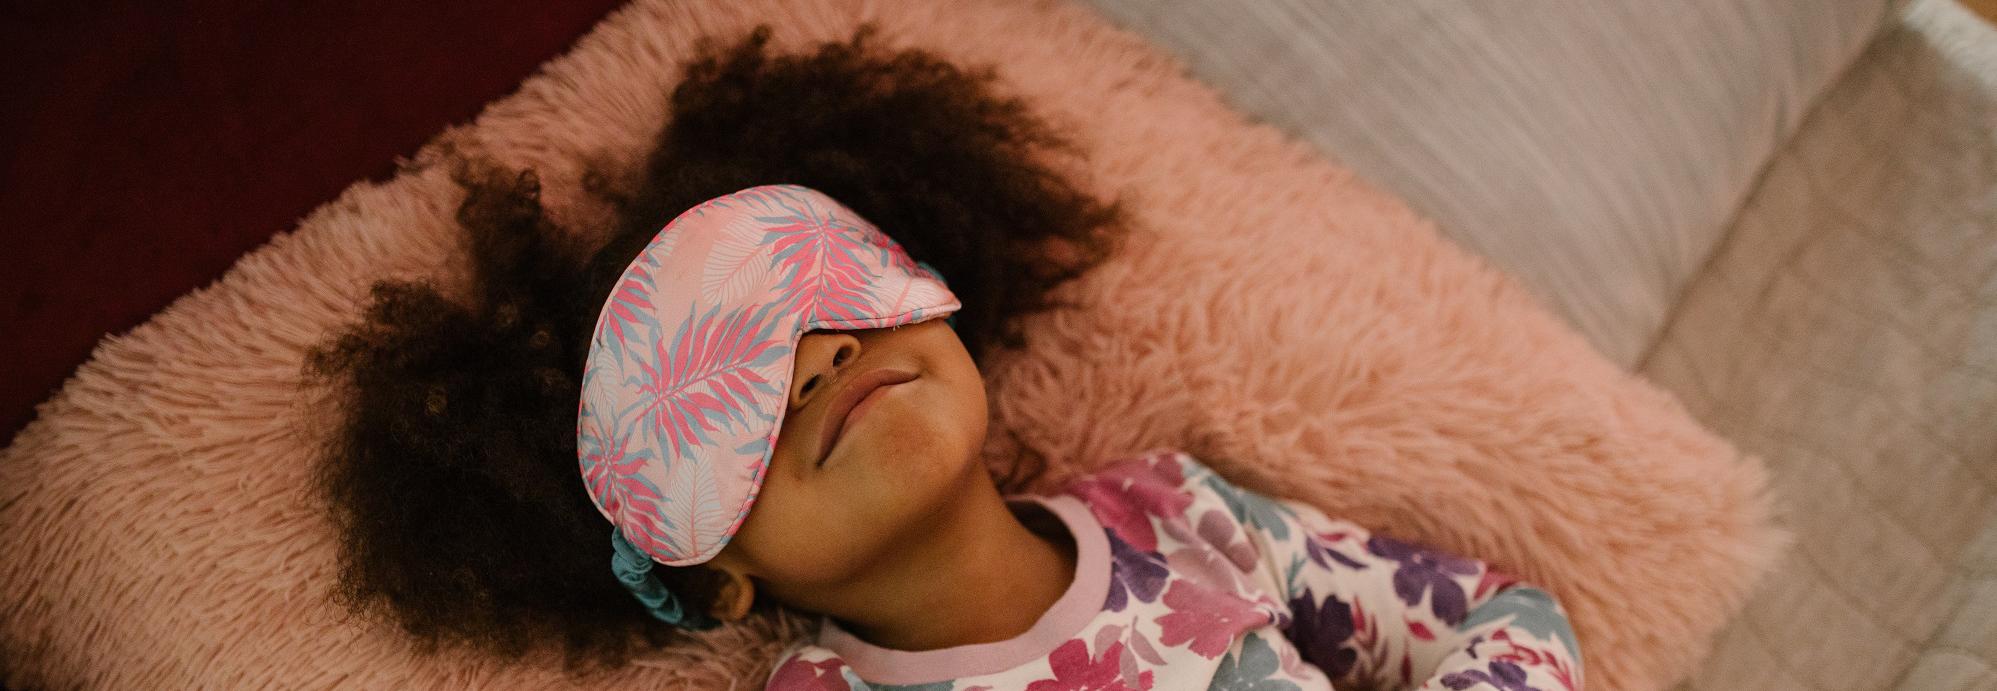 child sleeping with eye mask